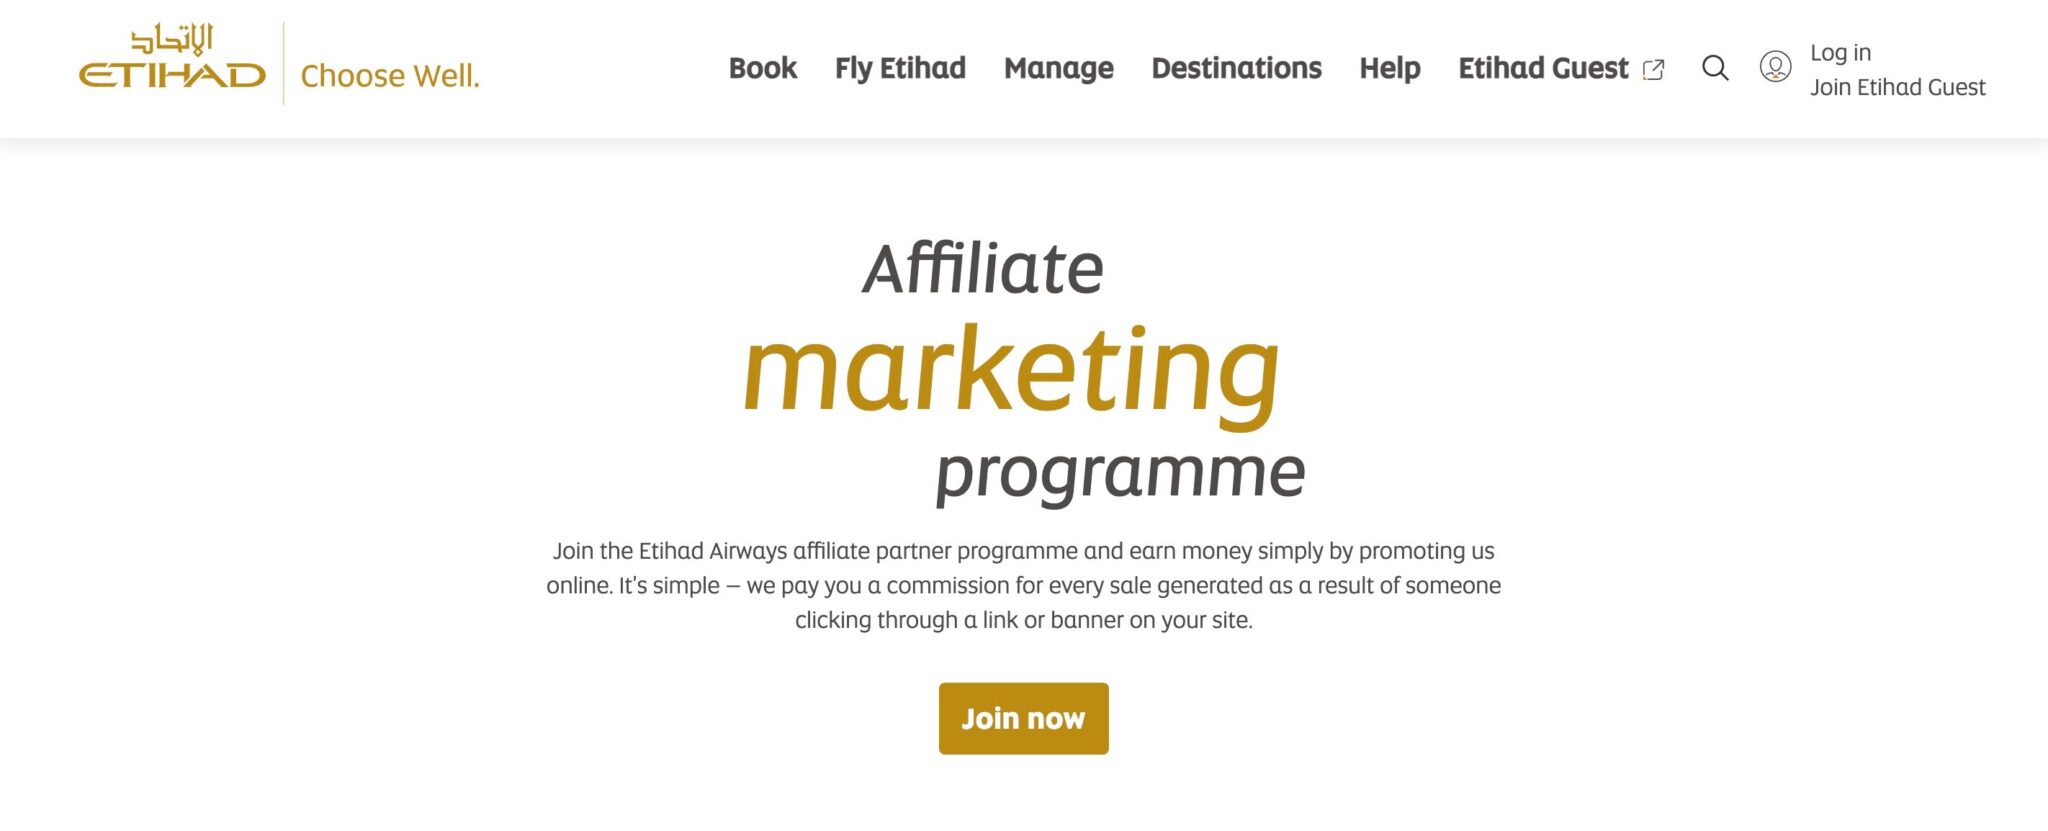 Best airline affiliate program Etihad